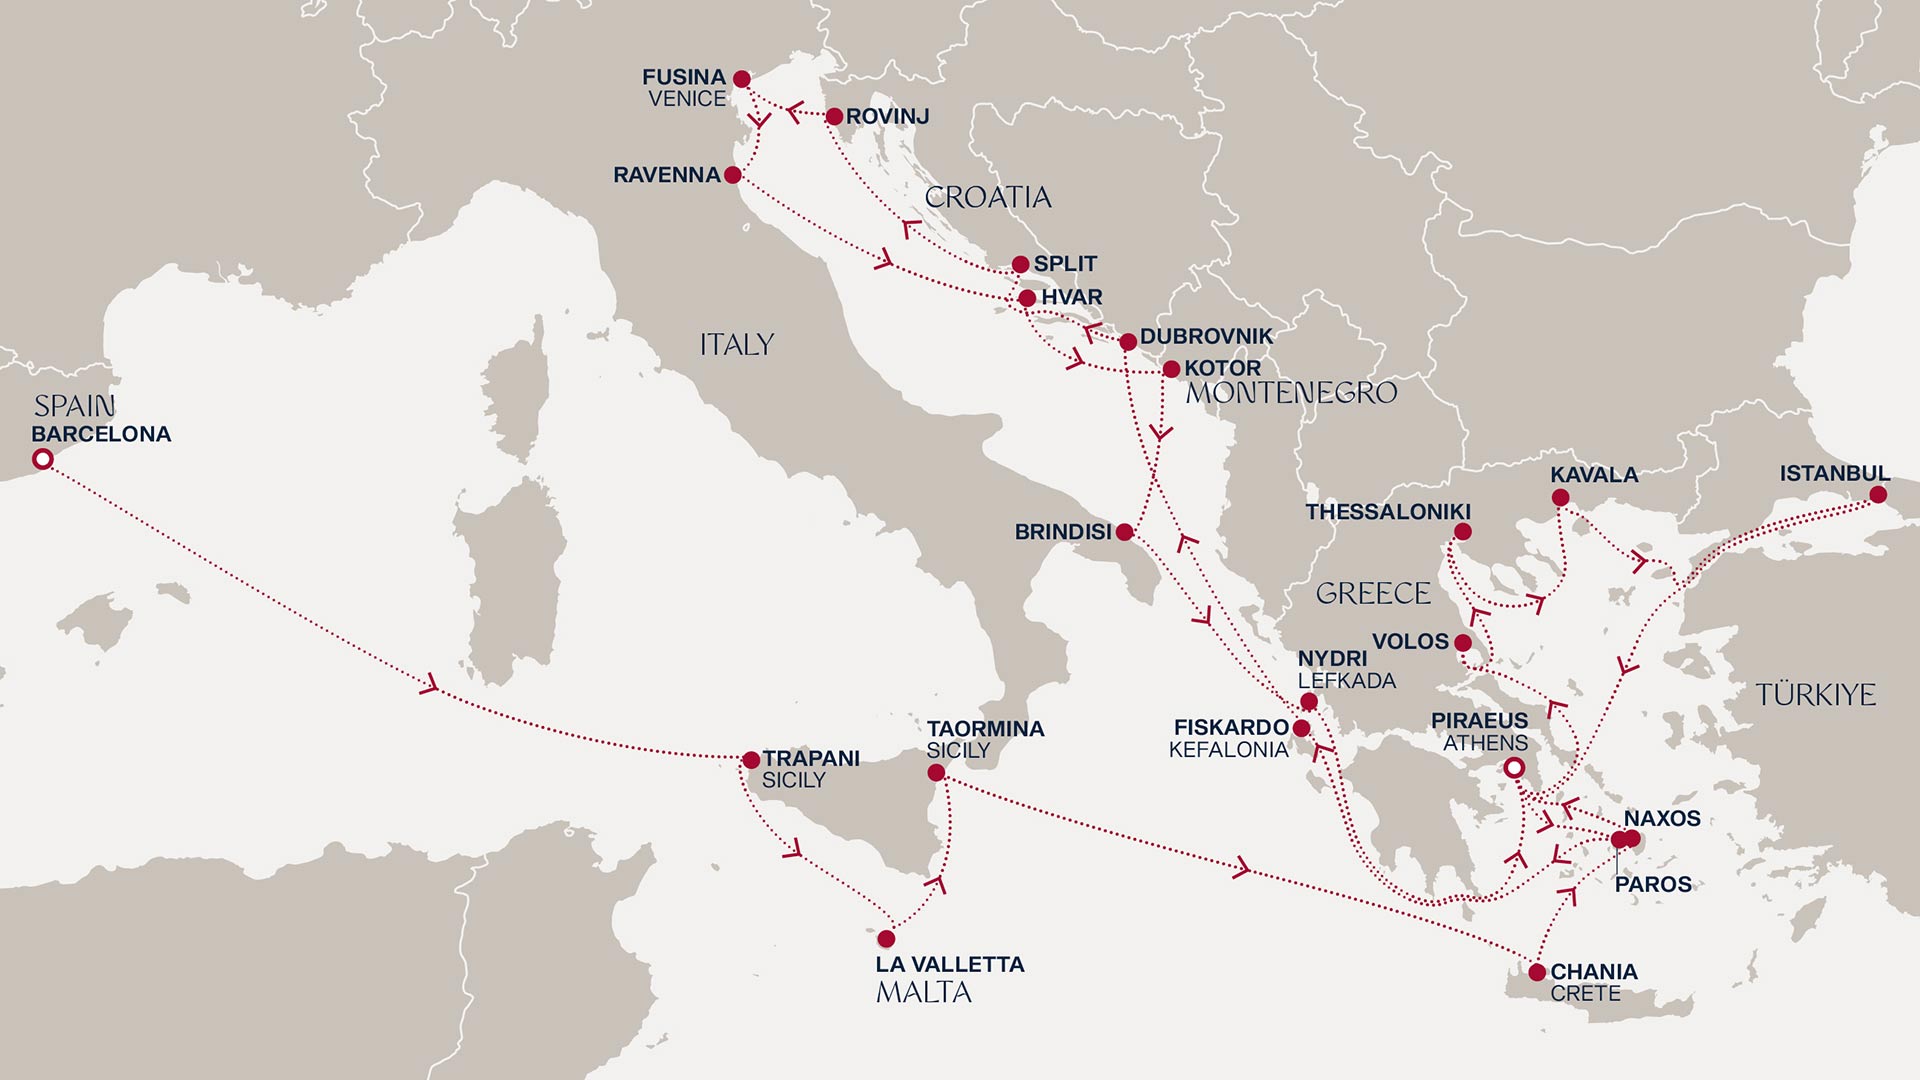 Velkolepá cesta po stopách středomořských legend